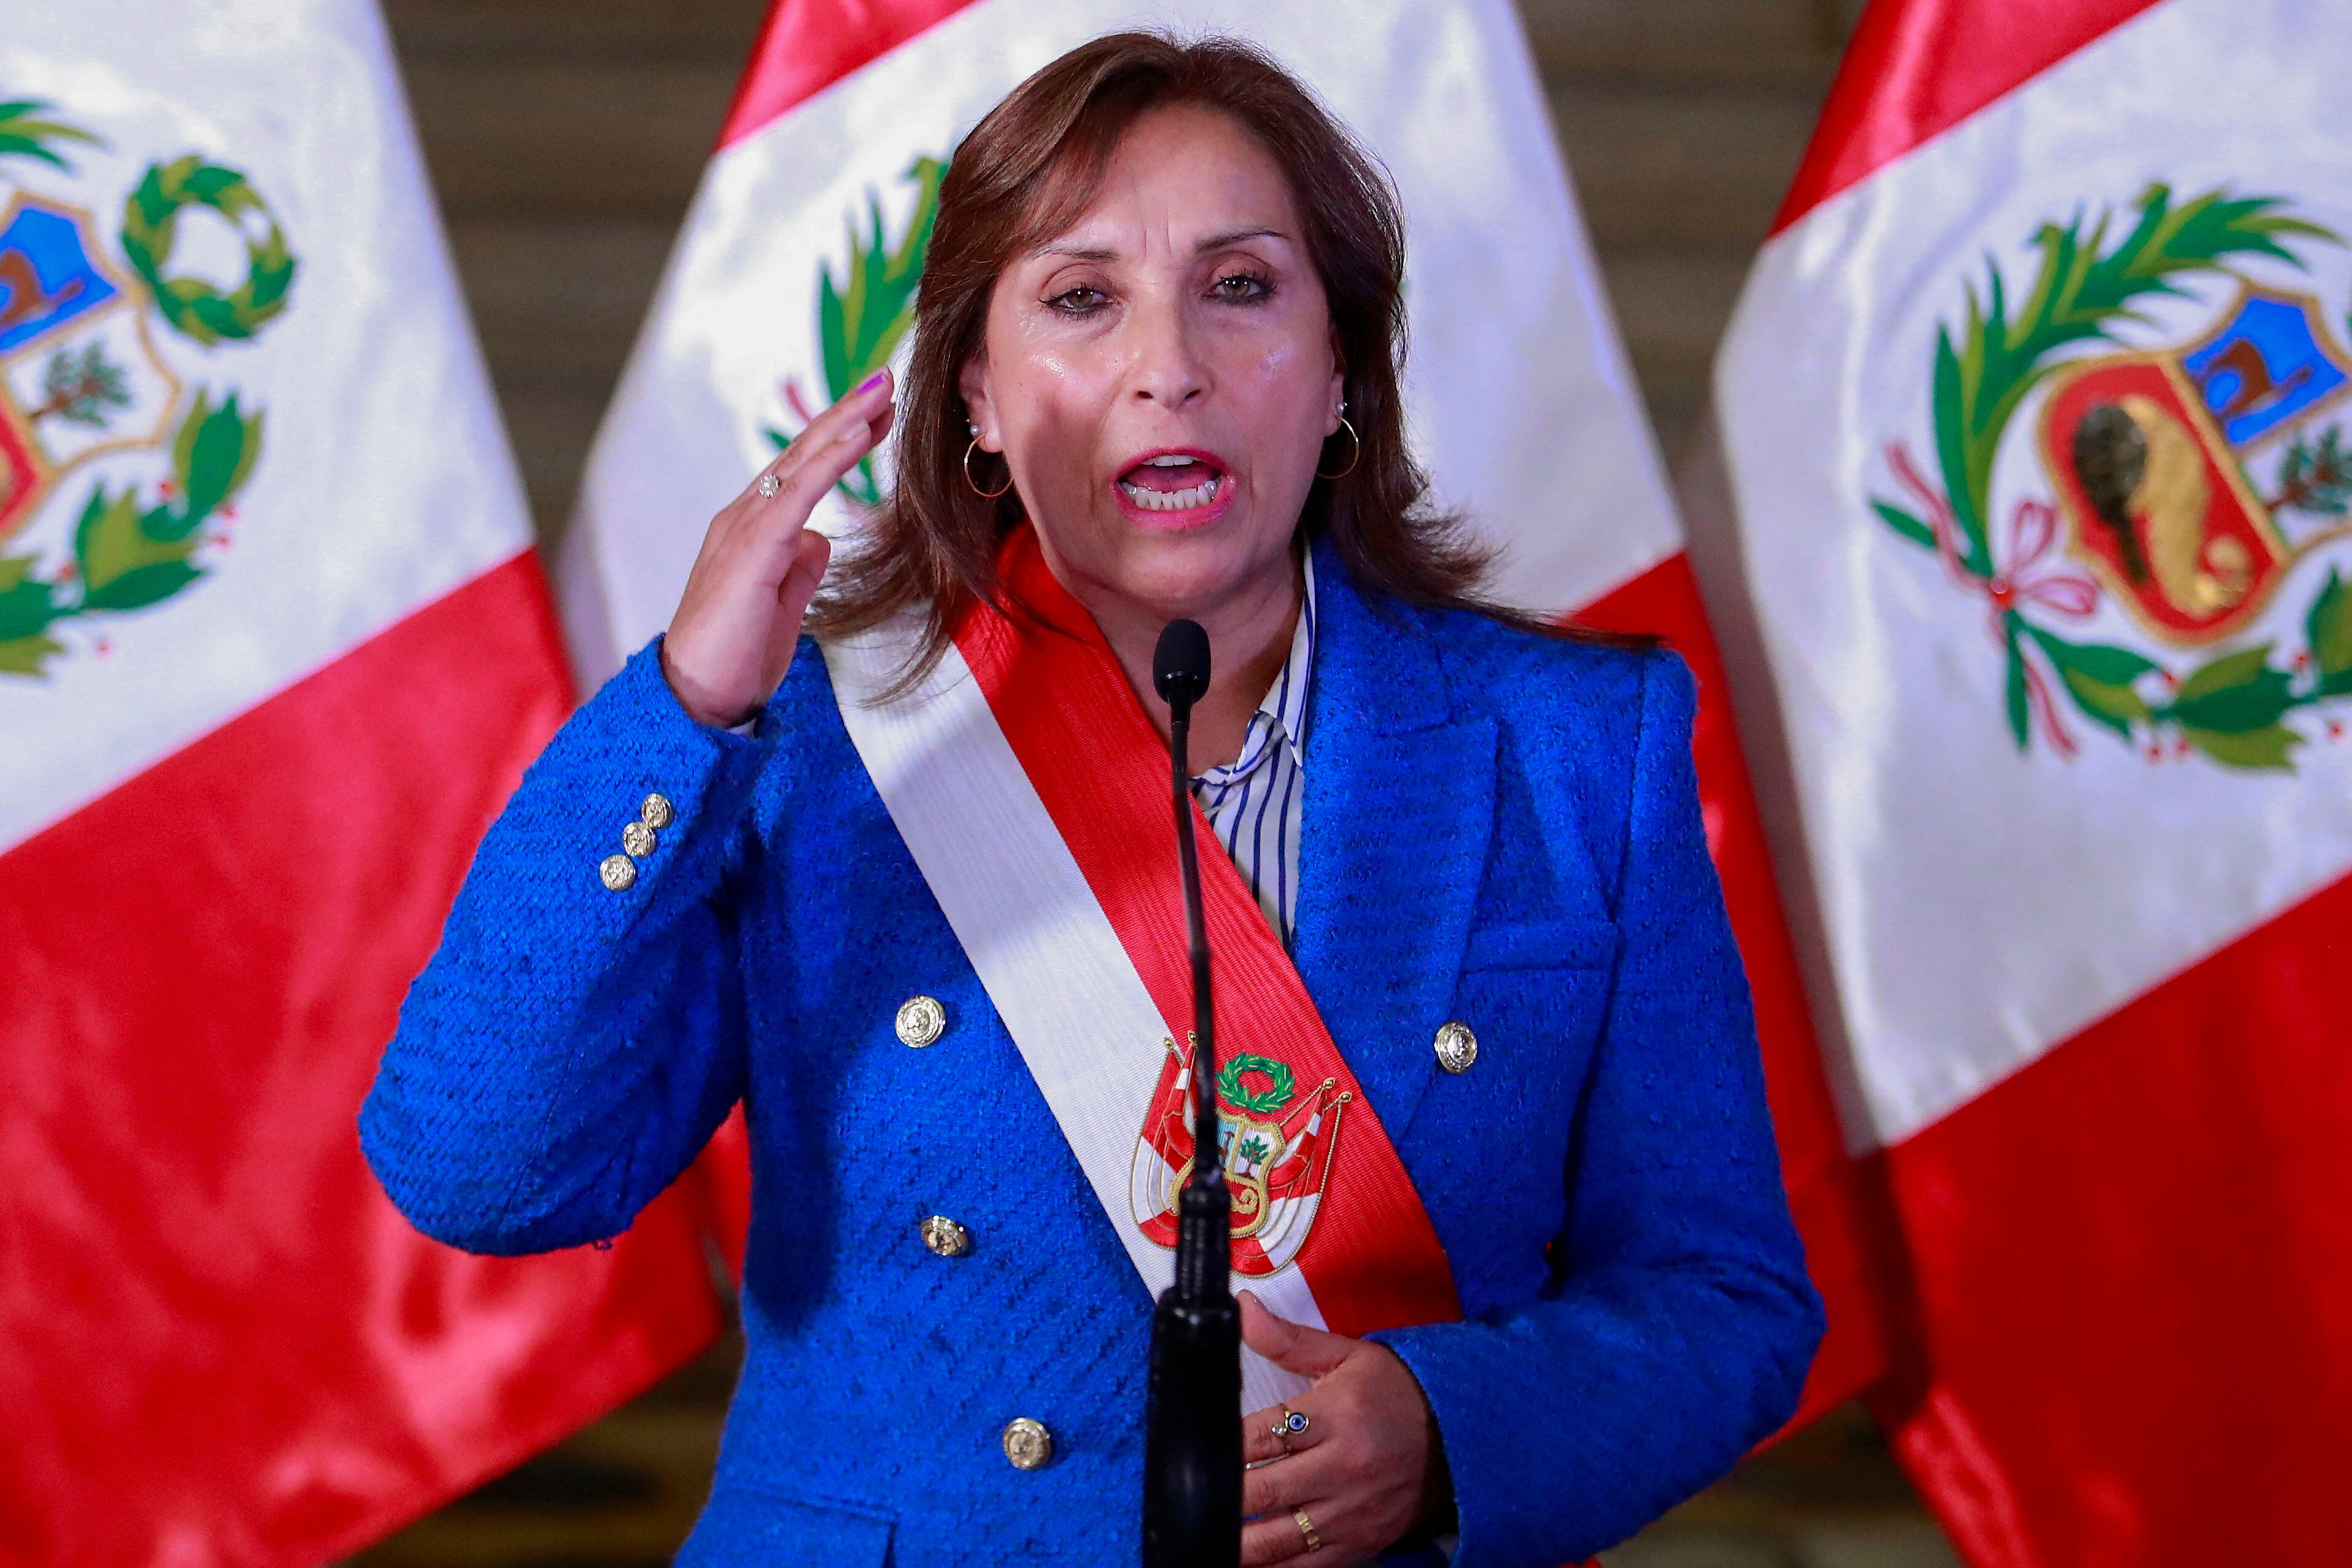 La nueva presidenta de Perú, Dina Boluarte, con solo trece días en el cargo, reformará su gabinete este martes, según anunció, incluyendo el cambio del primer ministro, para privilegiar la designación de funcionarios con mayor experiencia política para buscar salidas a la crisis. FOTO: